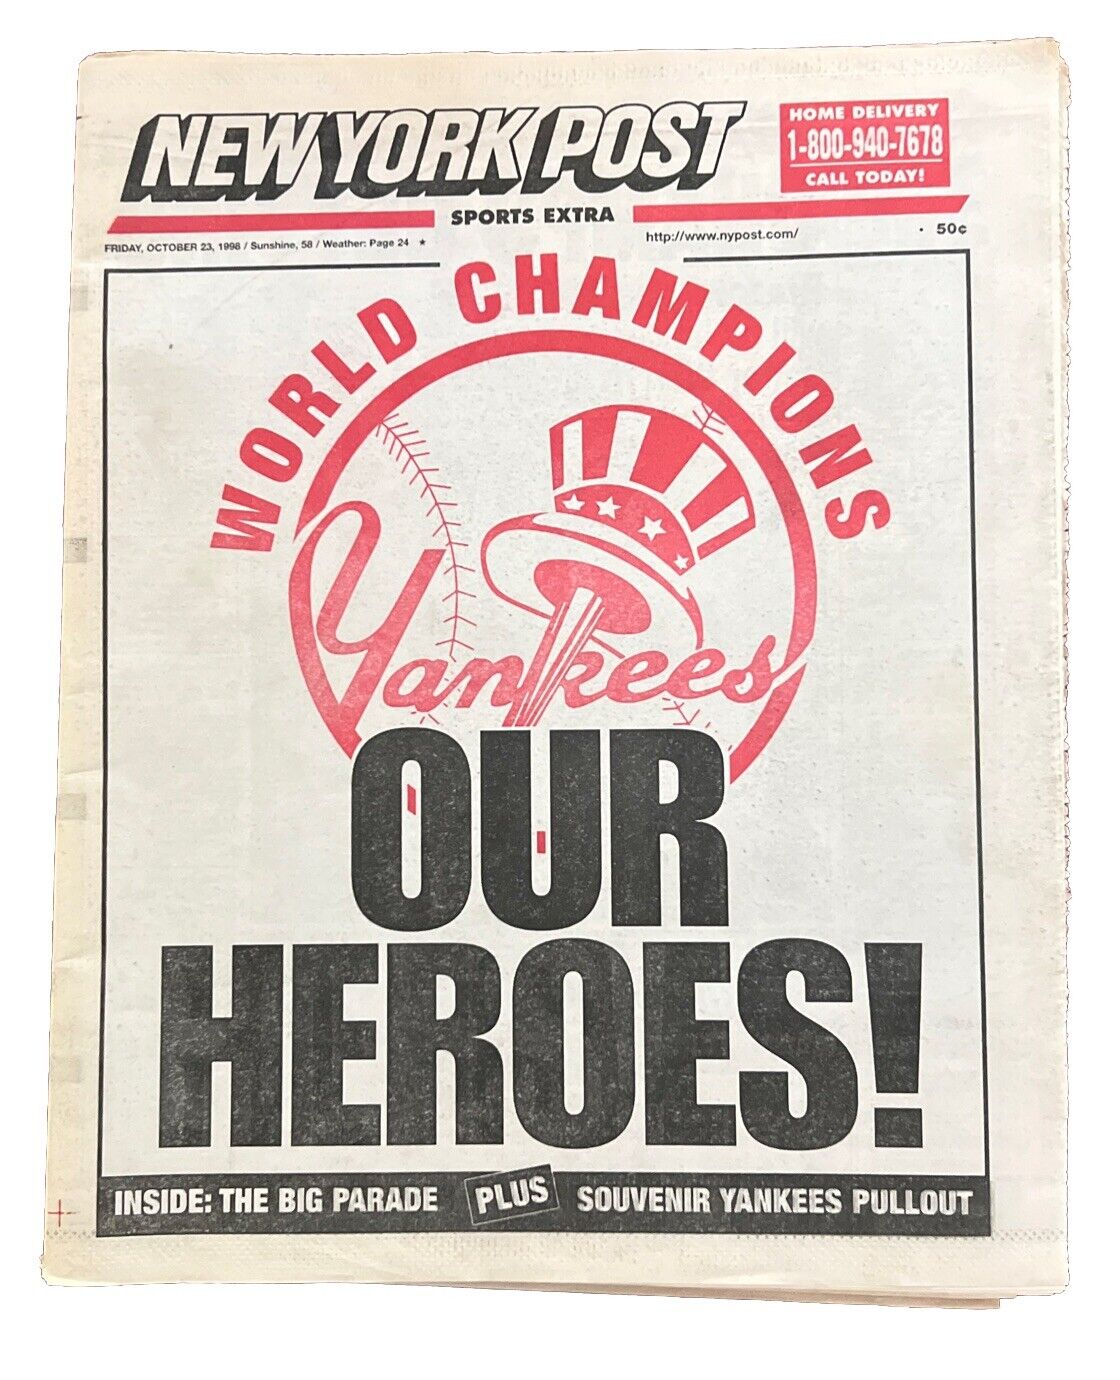 1998 OCT 23 NEW YORK POST NEWSPAPER - N.Y. YANKEES WIN WORLD SERIES- OUR HEROES